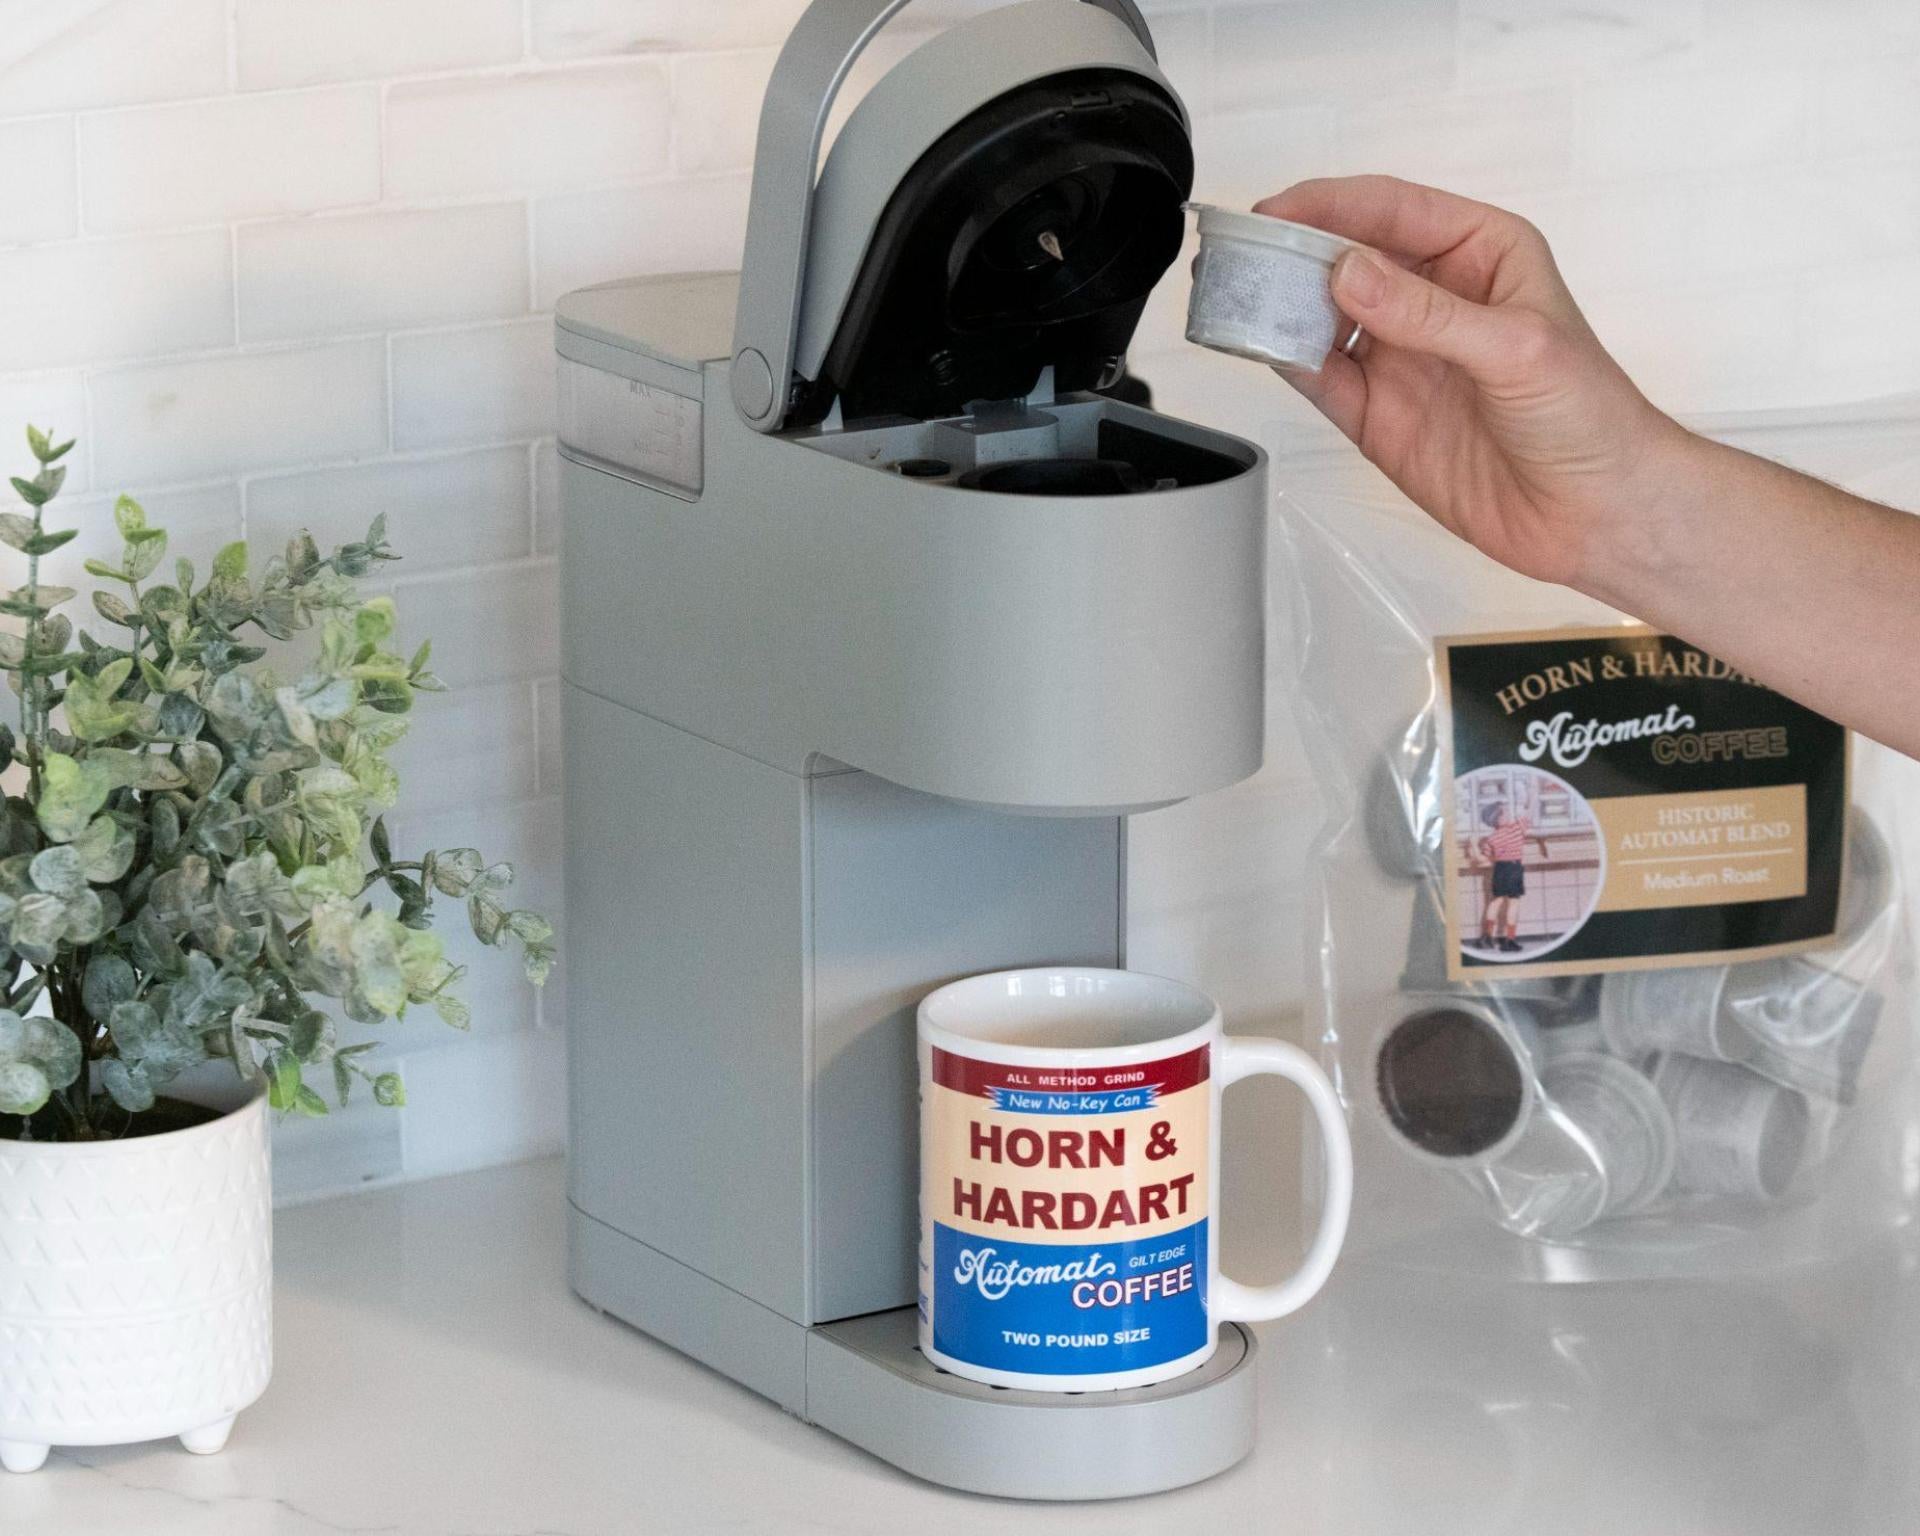 Horn and Hardart Coffee Pods and Mug